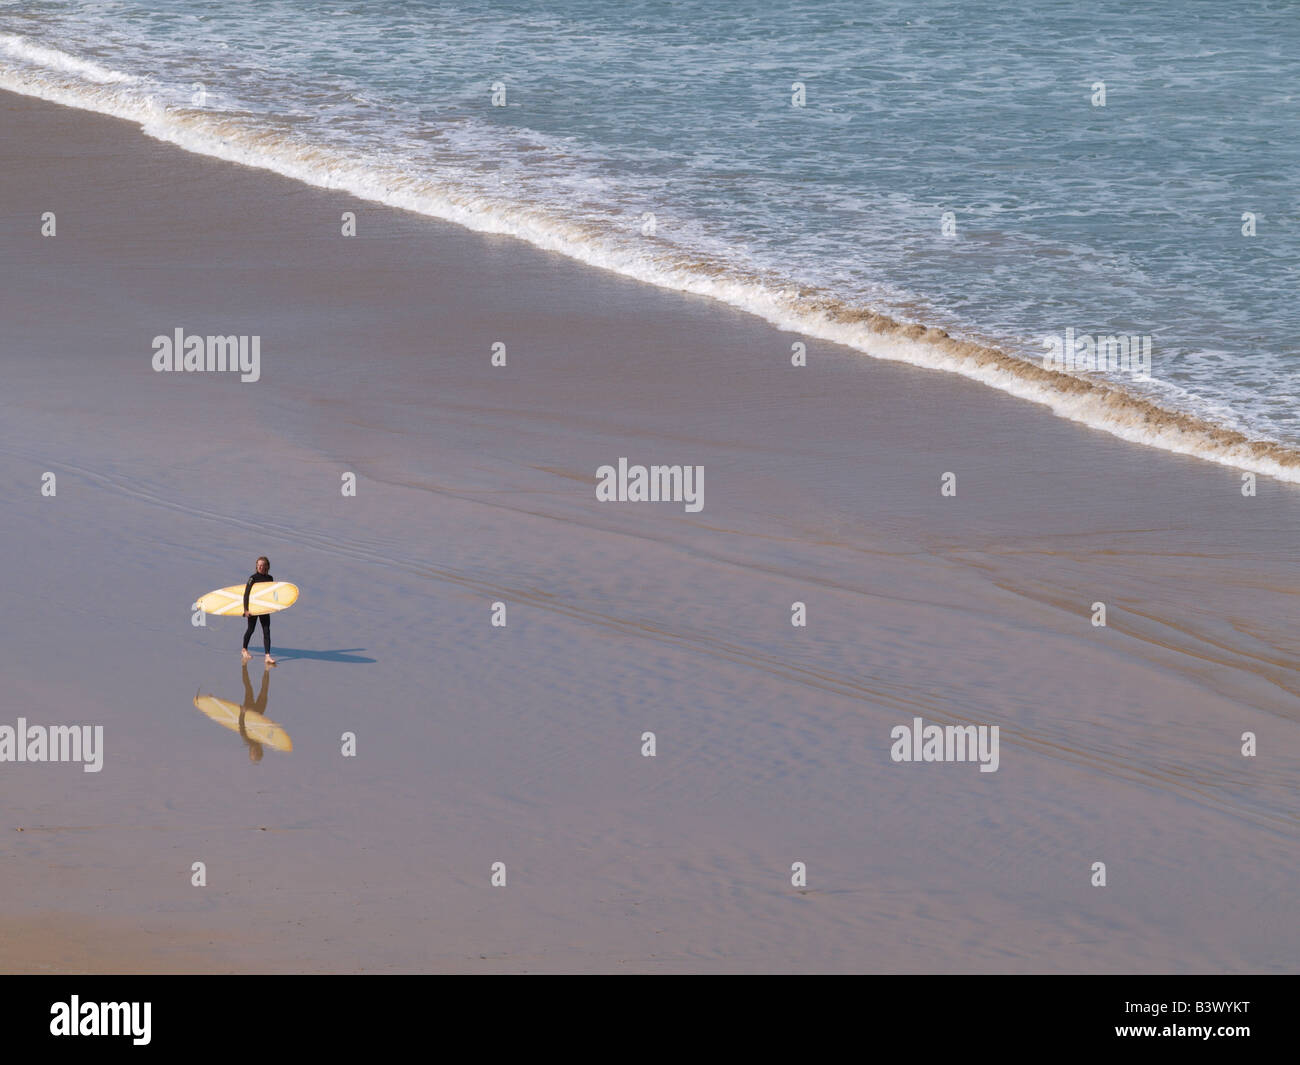 Surfeur homme marchant le long de la plage avec sa planche de surf sous le bras, reflète clairement dans le sable de l'eau. Newquay, Cornwall Banque D'Images